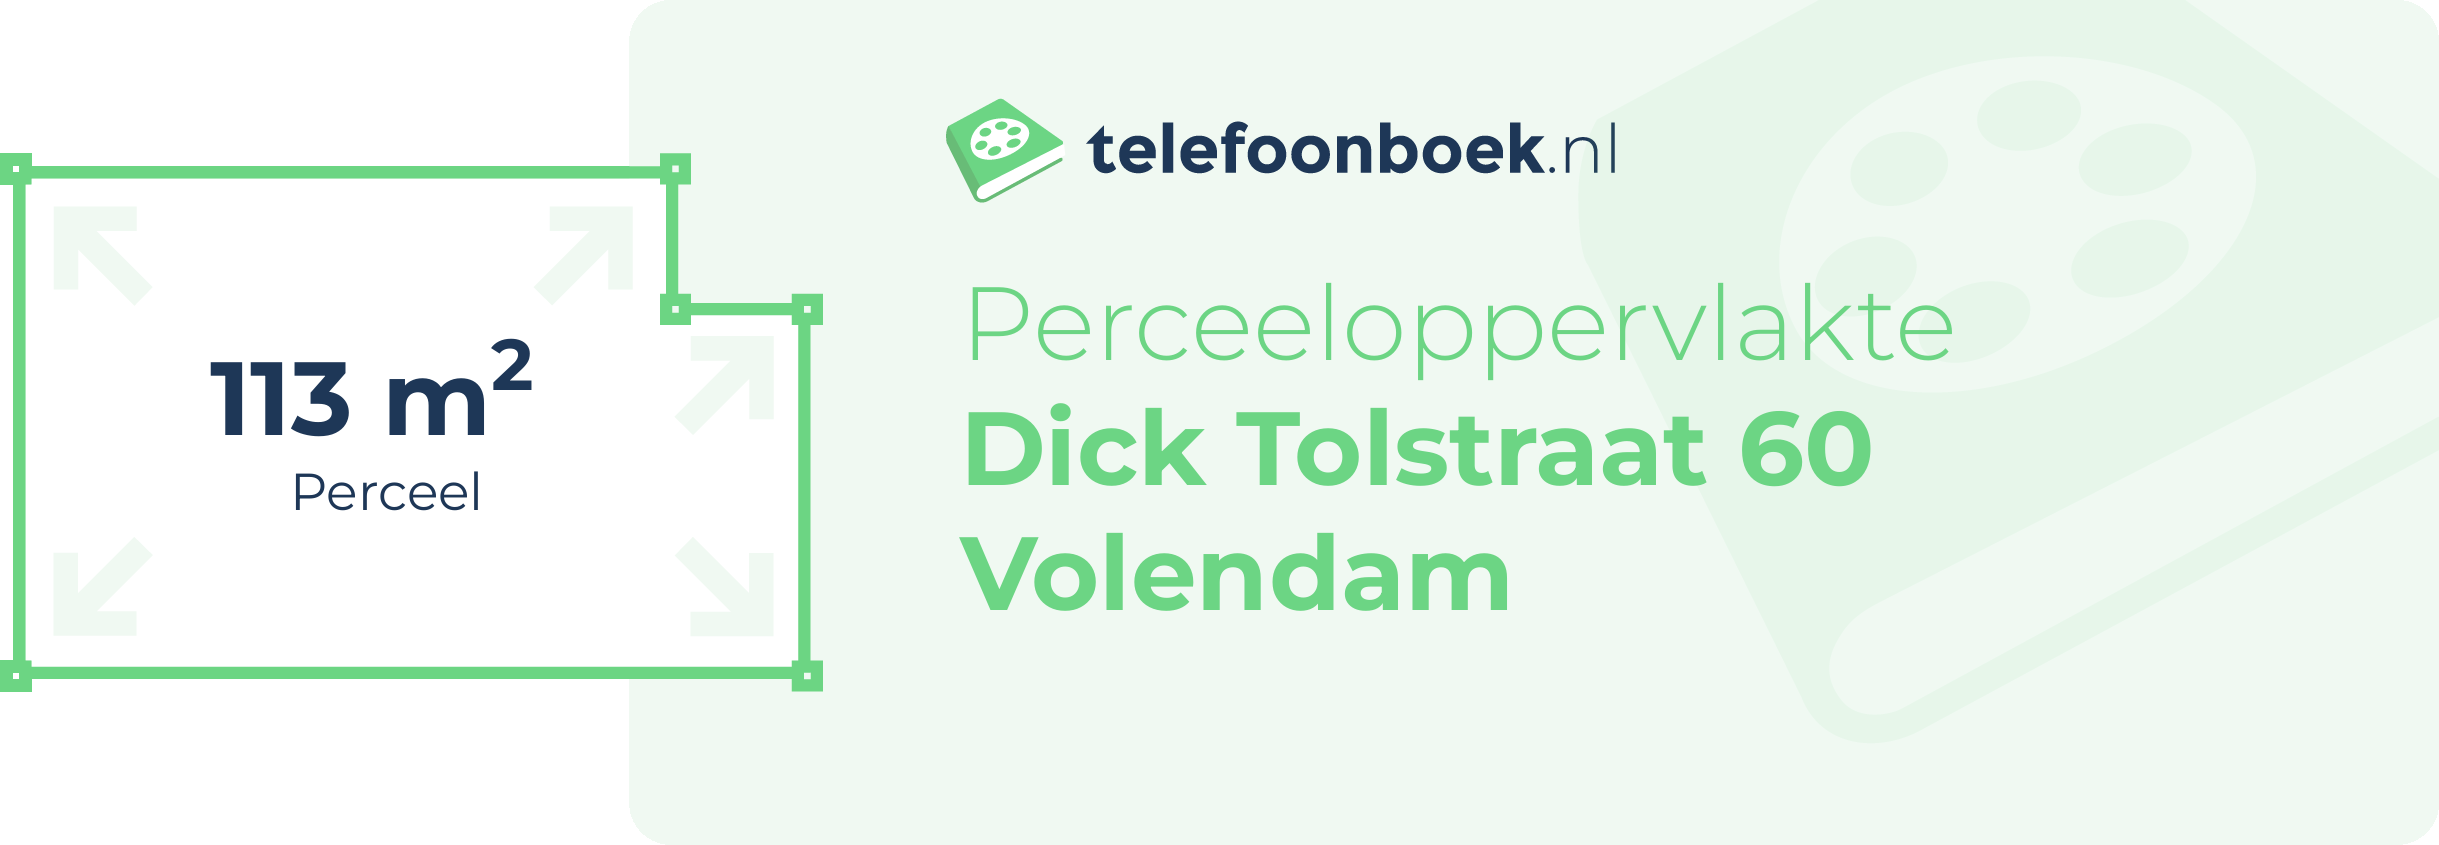 Perceeloppervlakte Dick Tolstraat 60 Volendam